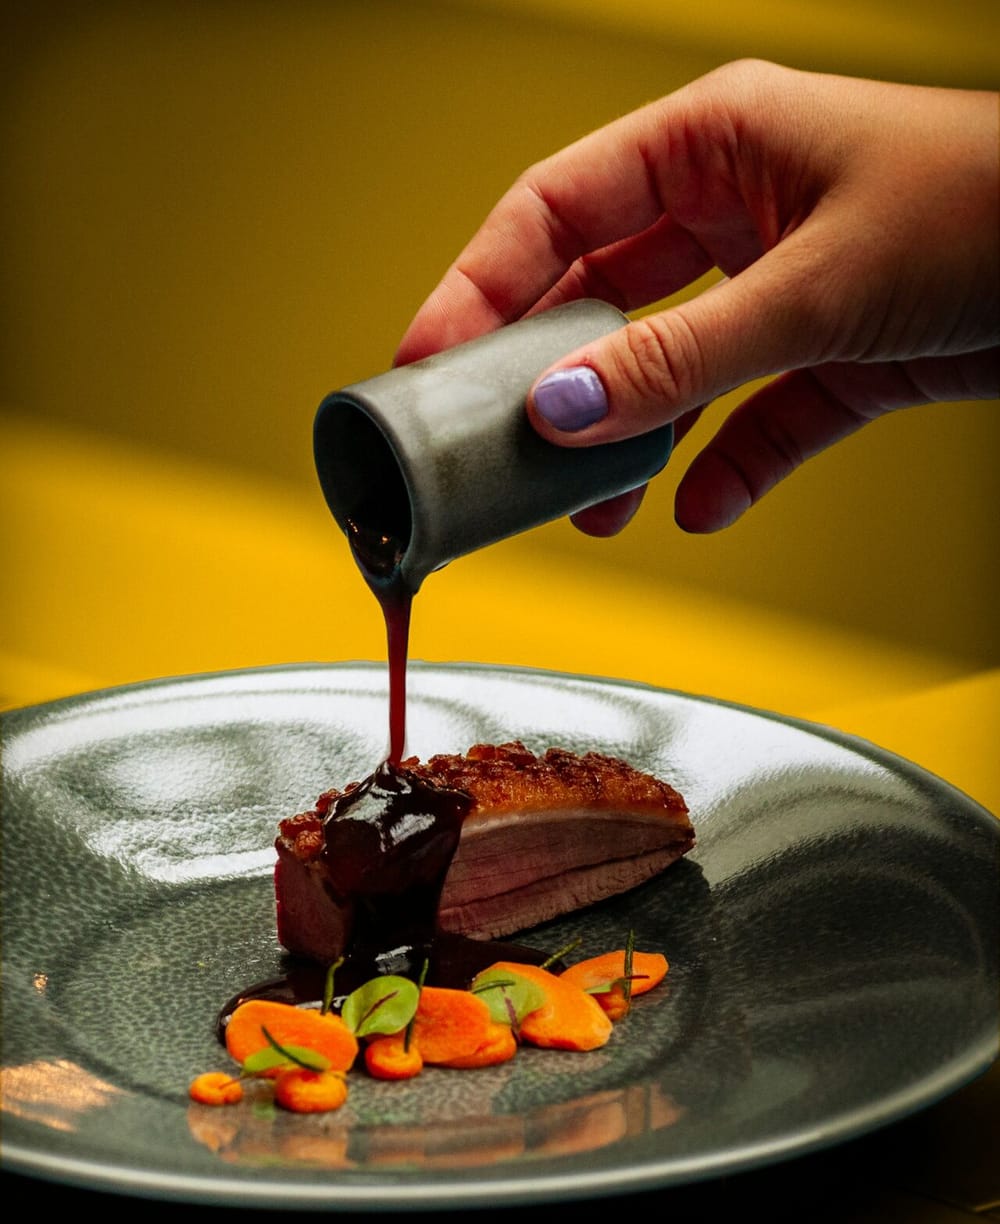 Gastronomie & Métiers de Bouche post feature image